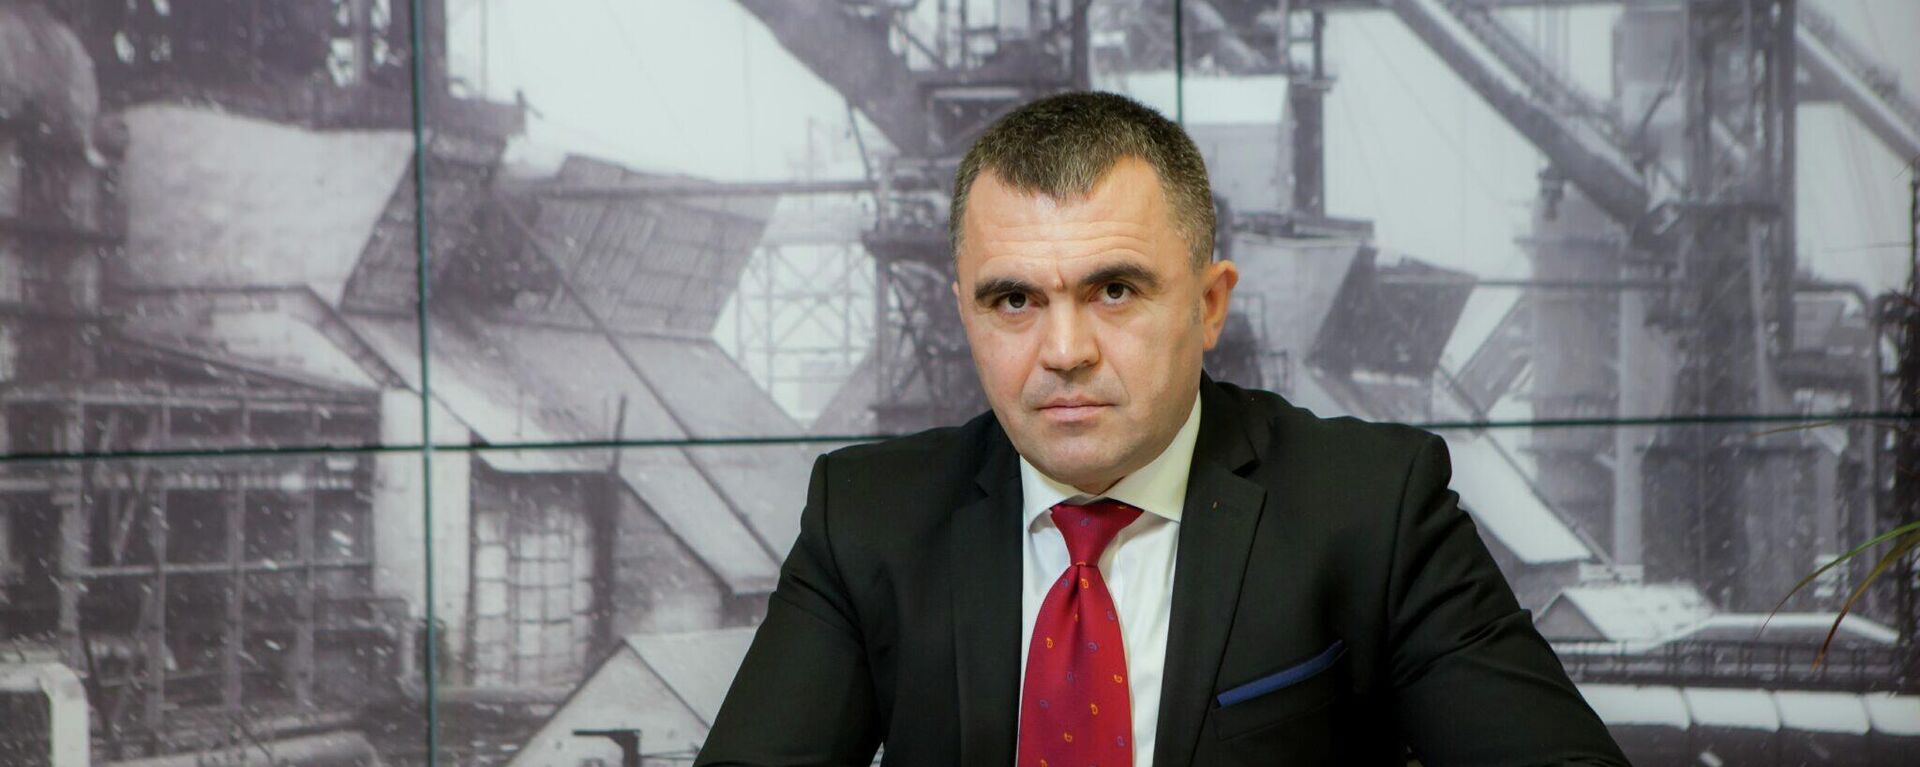 Igor Cujba își anunță demisia din funcția de director general al S.A. ”Metalferos” - Sputnik Moldova, 1920, 13.10.2021